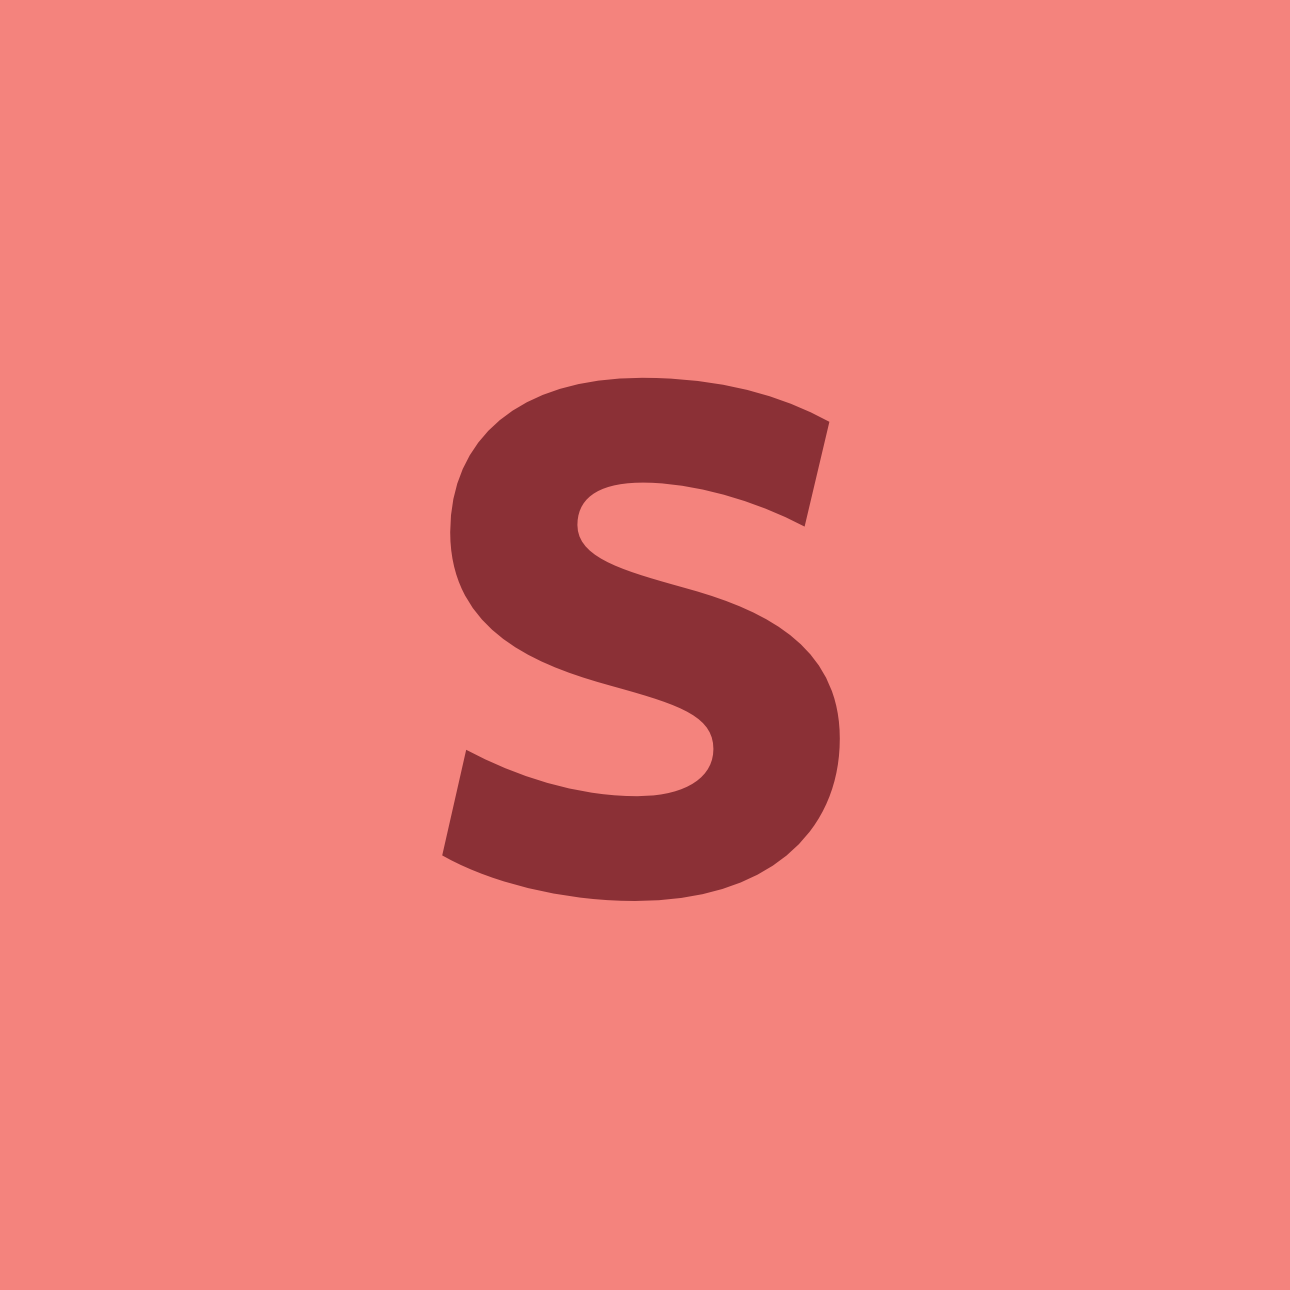 S S Shop 2 - Plano Logo